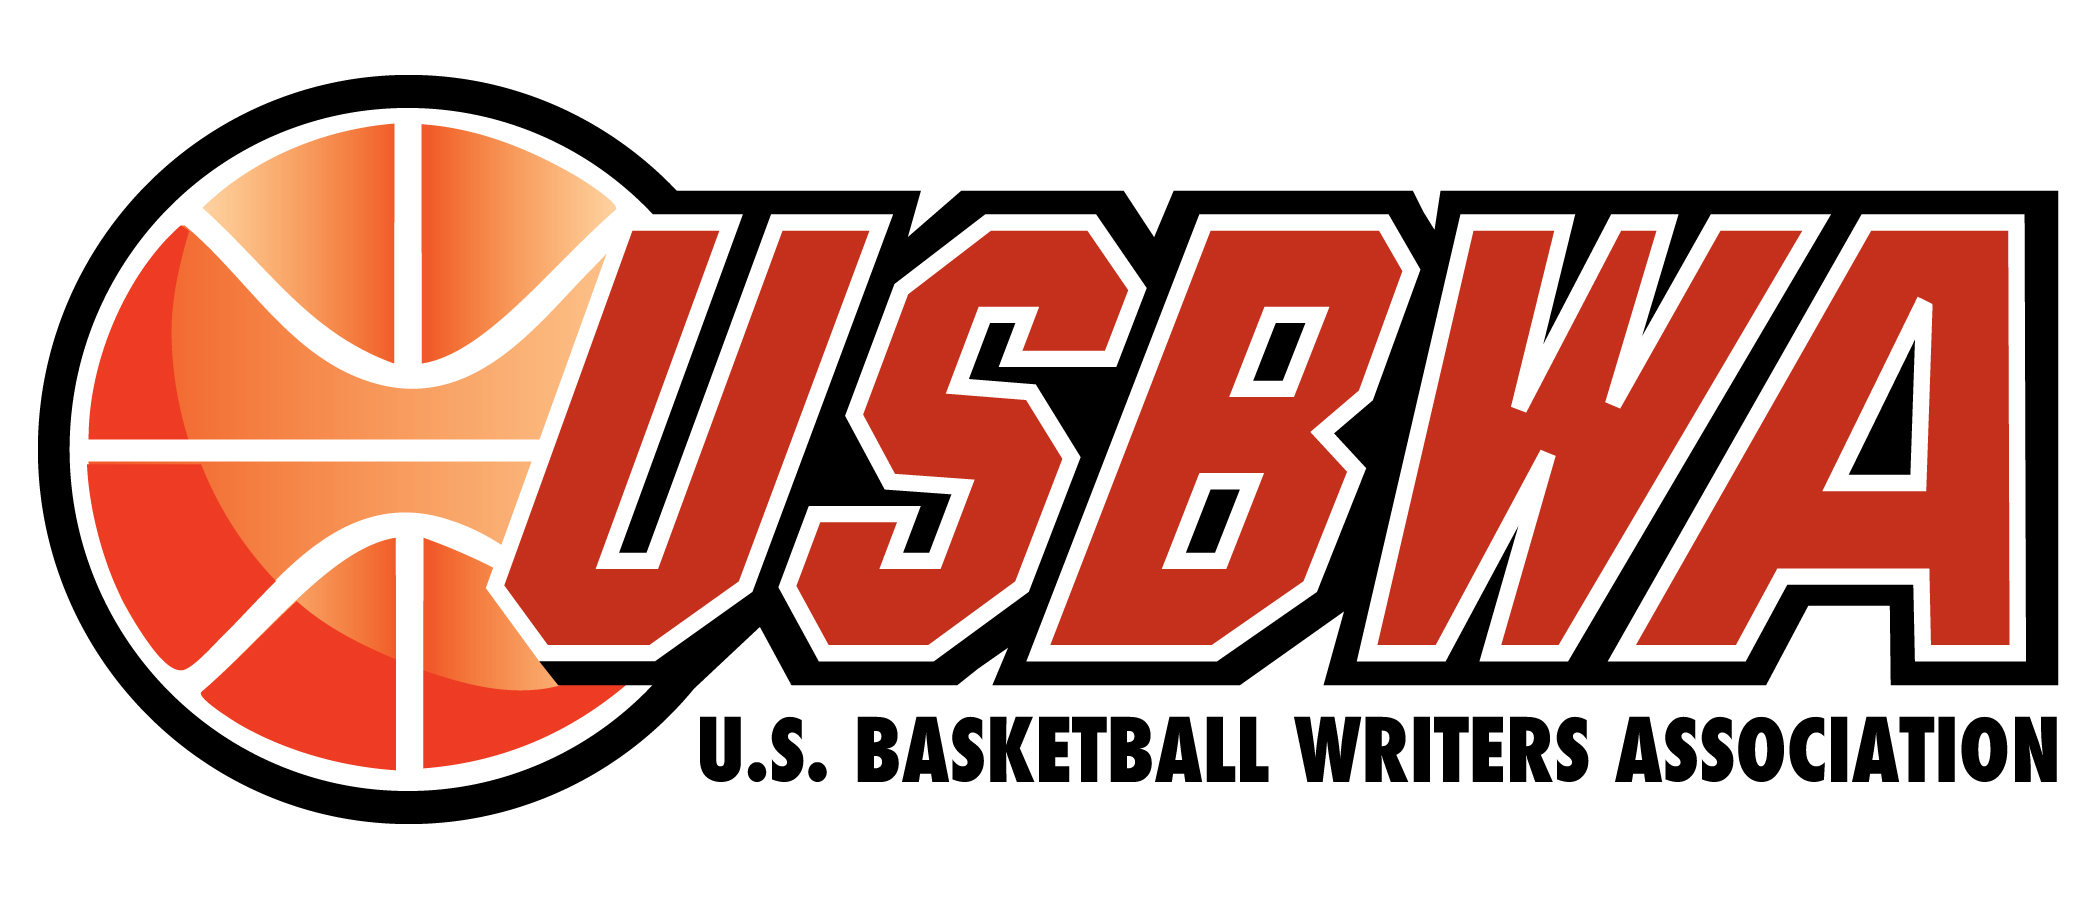 USBWA Logo